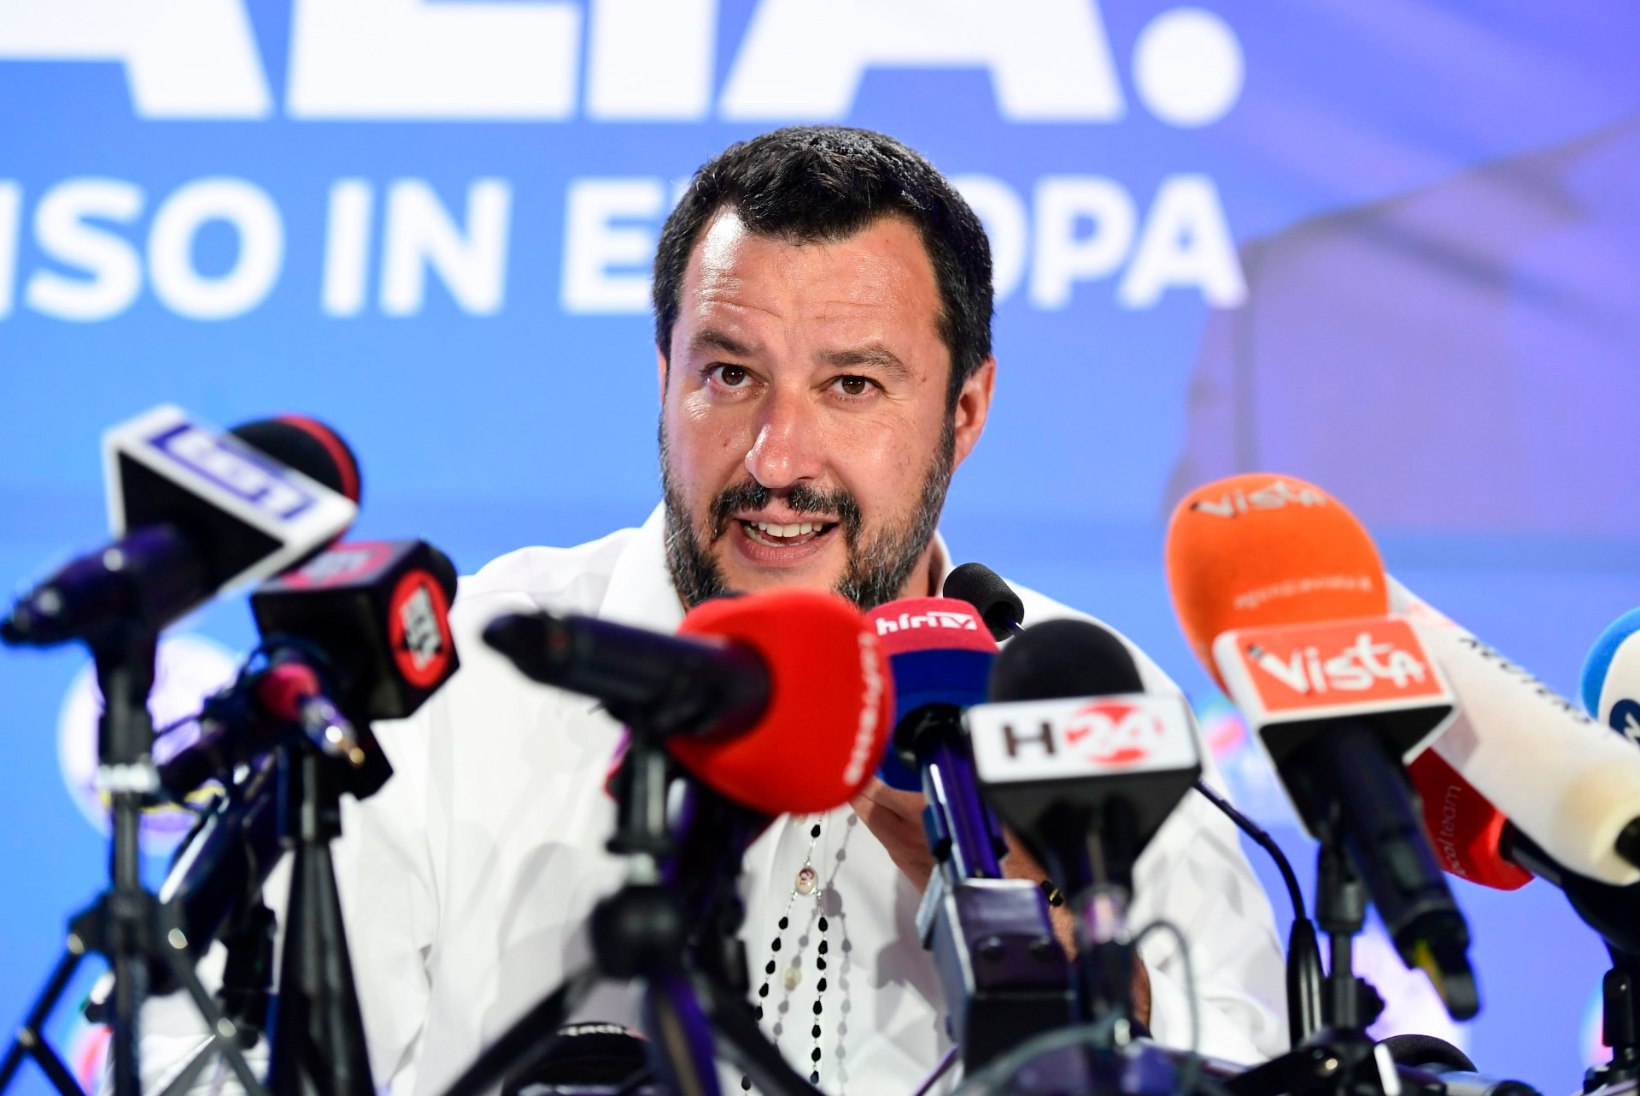 EUROOPA VALIS POPULISTE: võidu üle rõõmustavad Salvini, Le Pen, Farage ja Orban